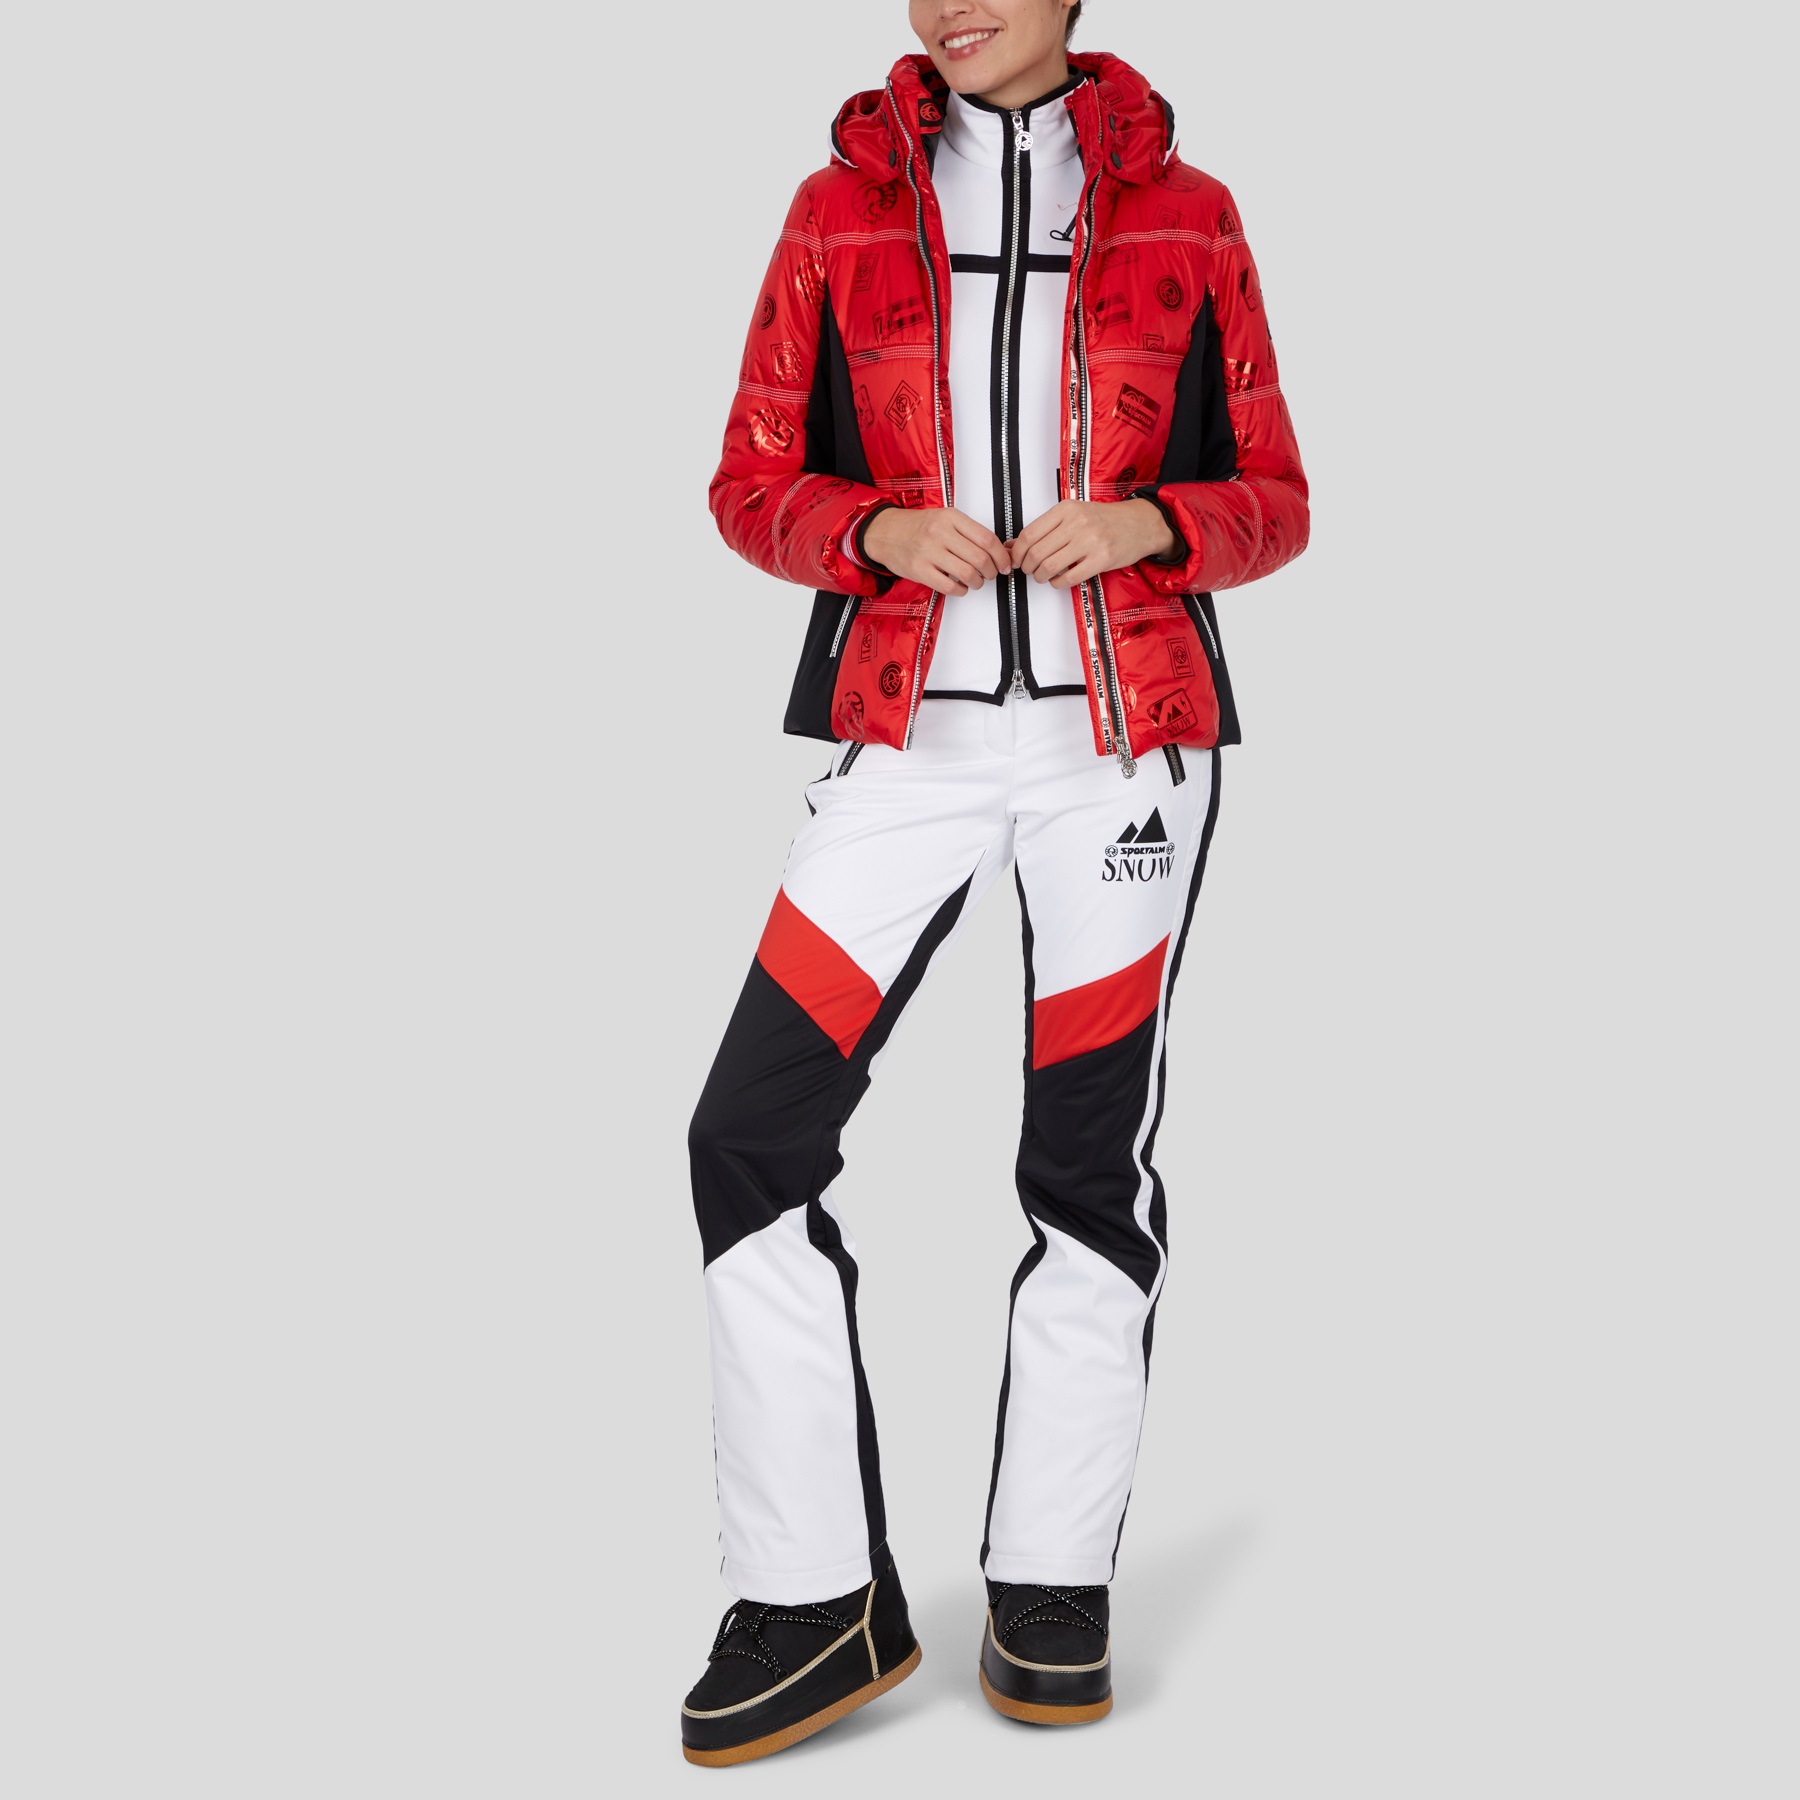  Ski & Snow Jackets -  sportalm Pfiati 902234141-43